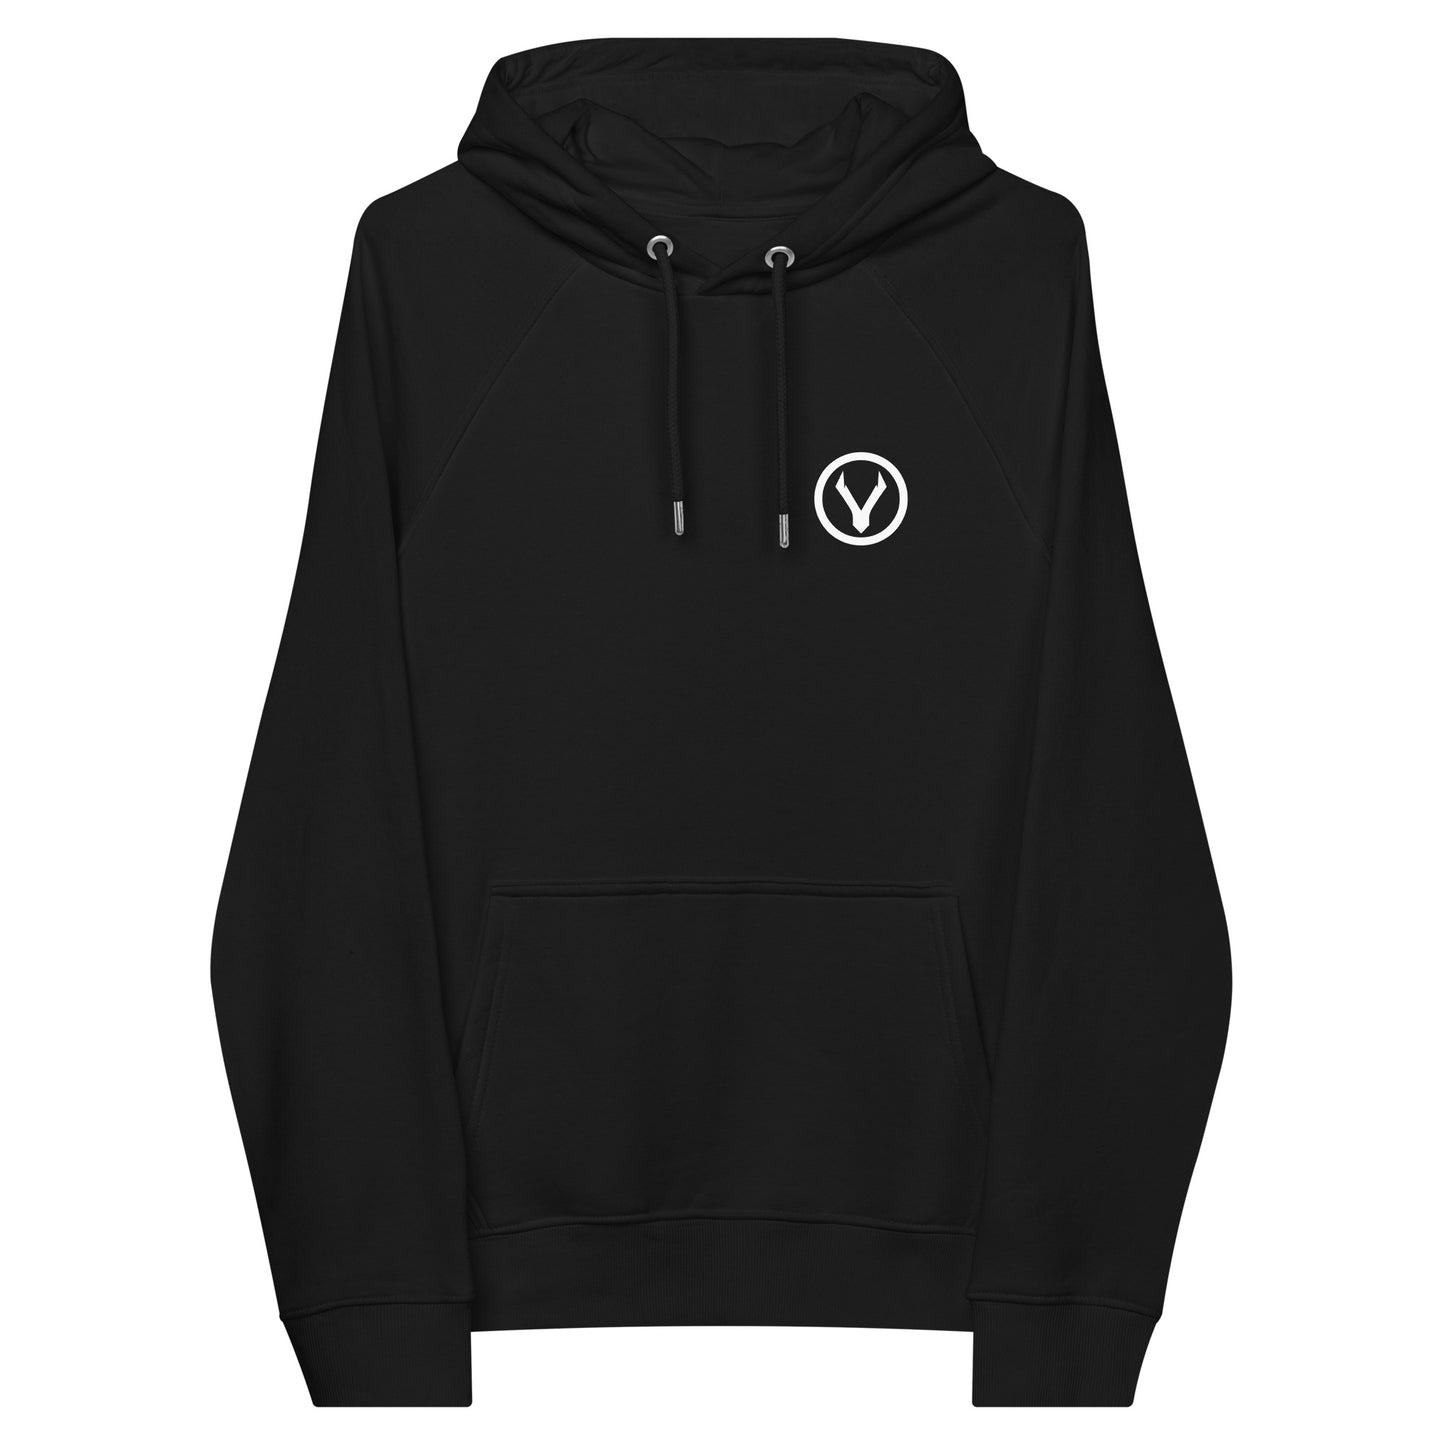 ECO VPA Vegan Powered Athlete Unisex raglan hoodie